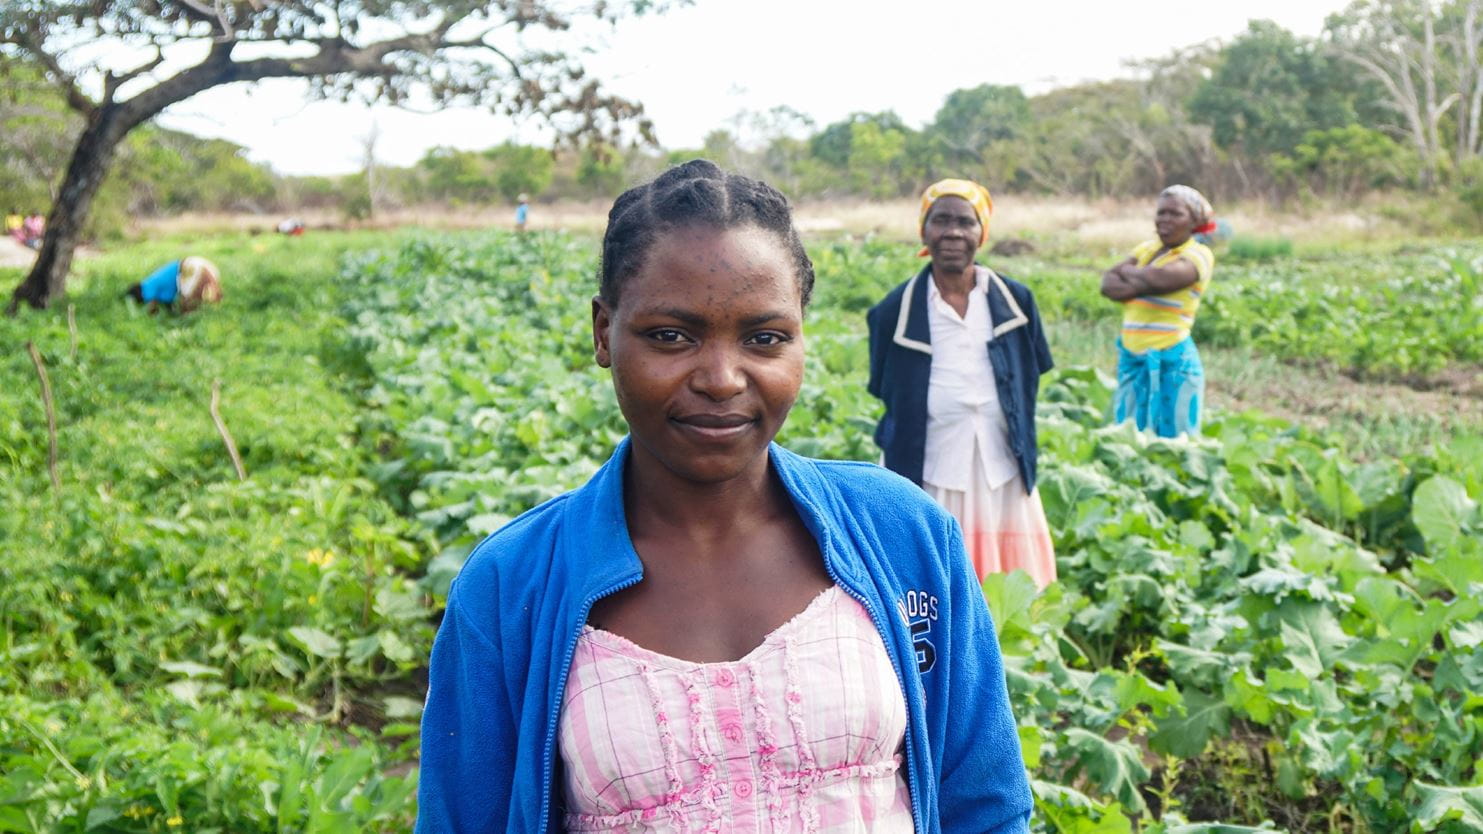 Une Mozambicaine sourit au milieu de cultures dans un champ, et deux autres femmes sont derrière elle, au loin.